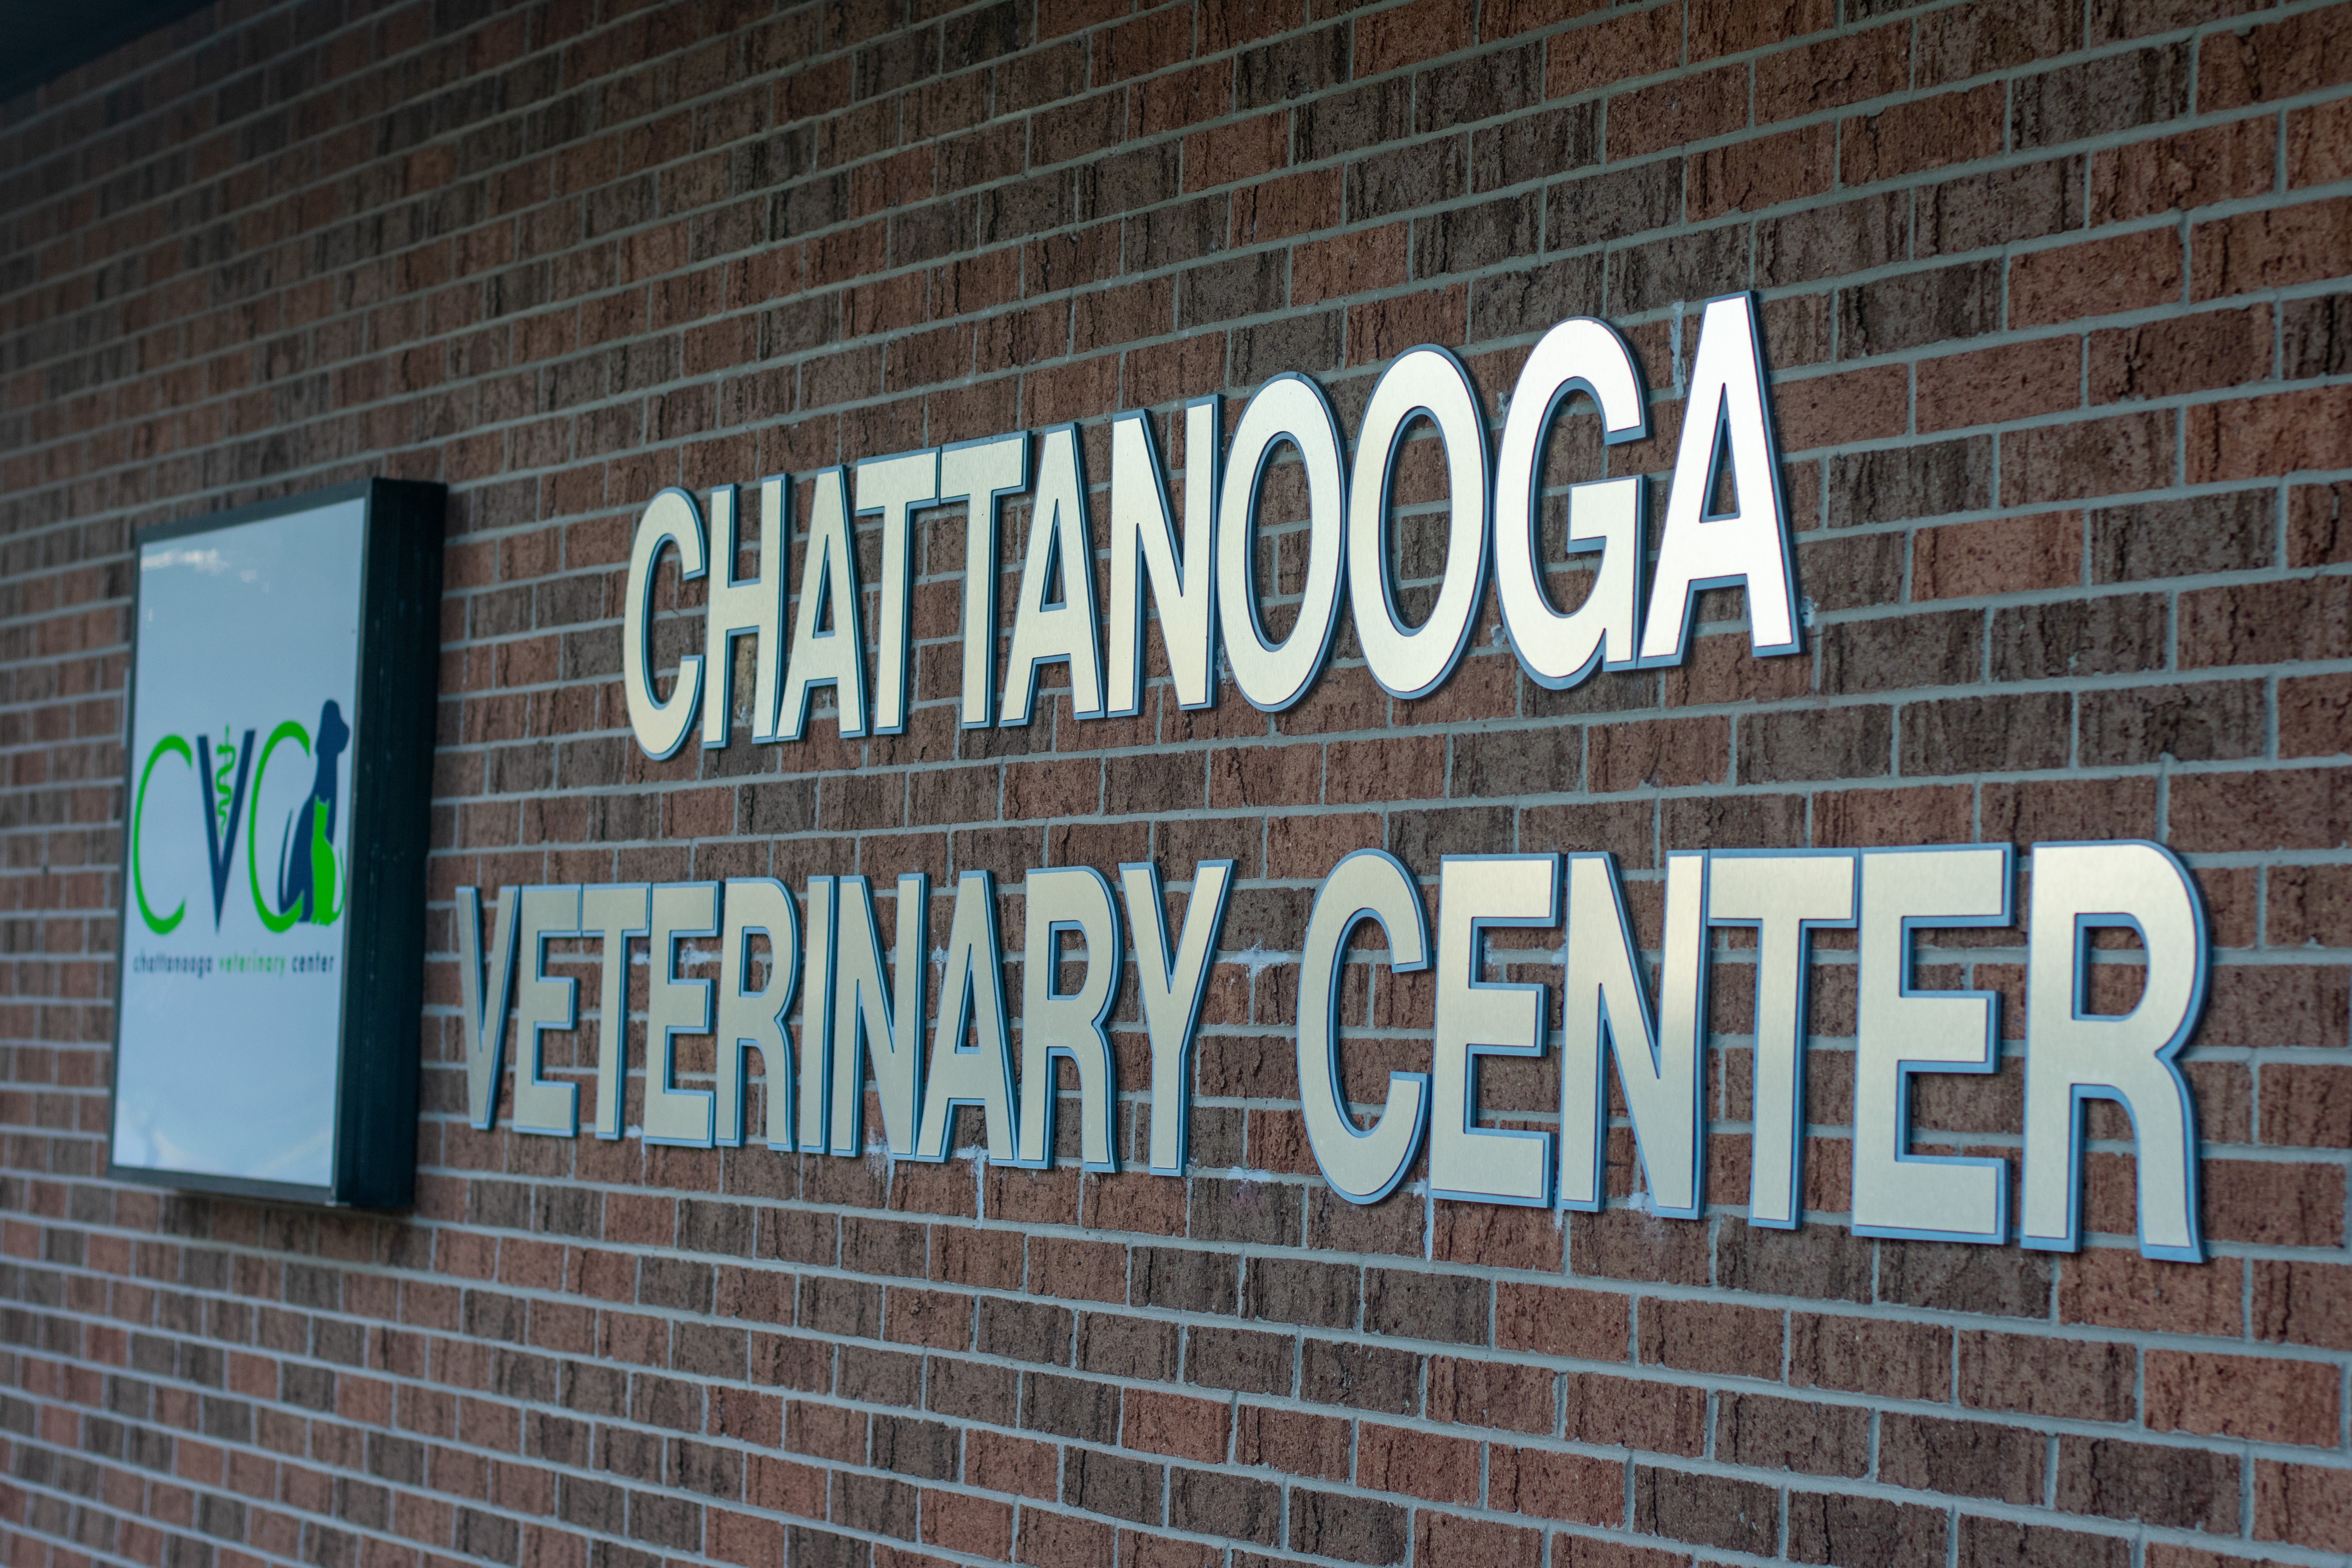 Chattanooga Veterinary Center, US, emergency vet